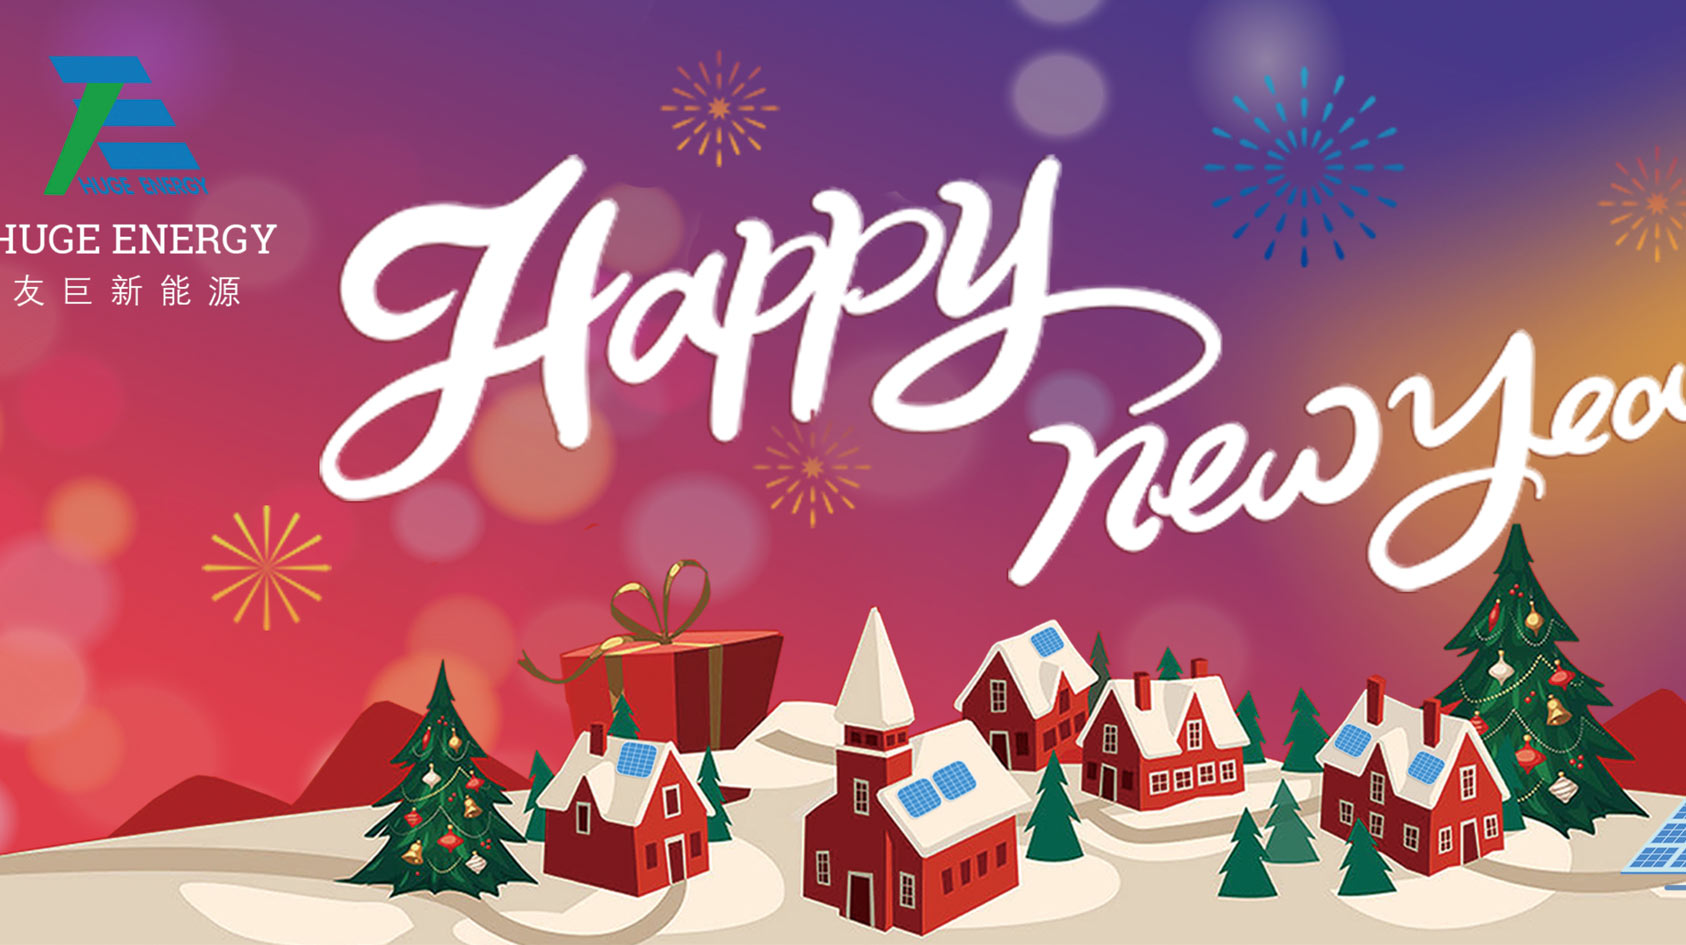 All'inizio del nuovo anno, Huge Energy vi augura un felice anno nuovo!